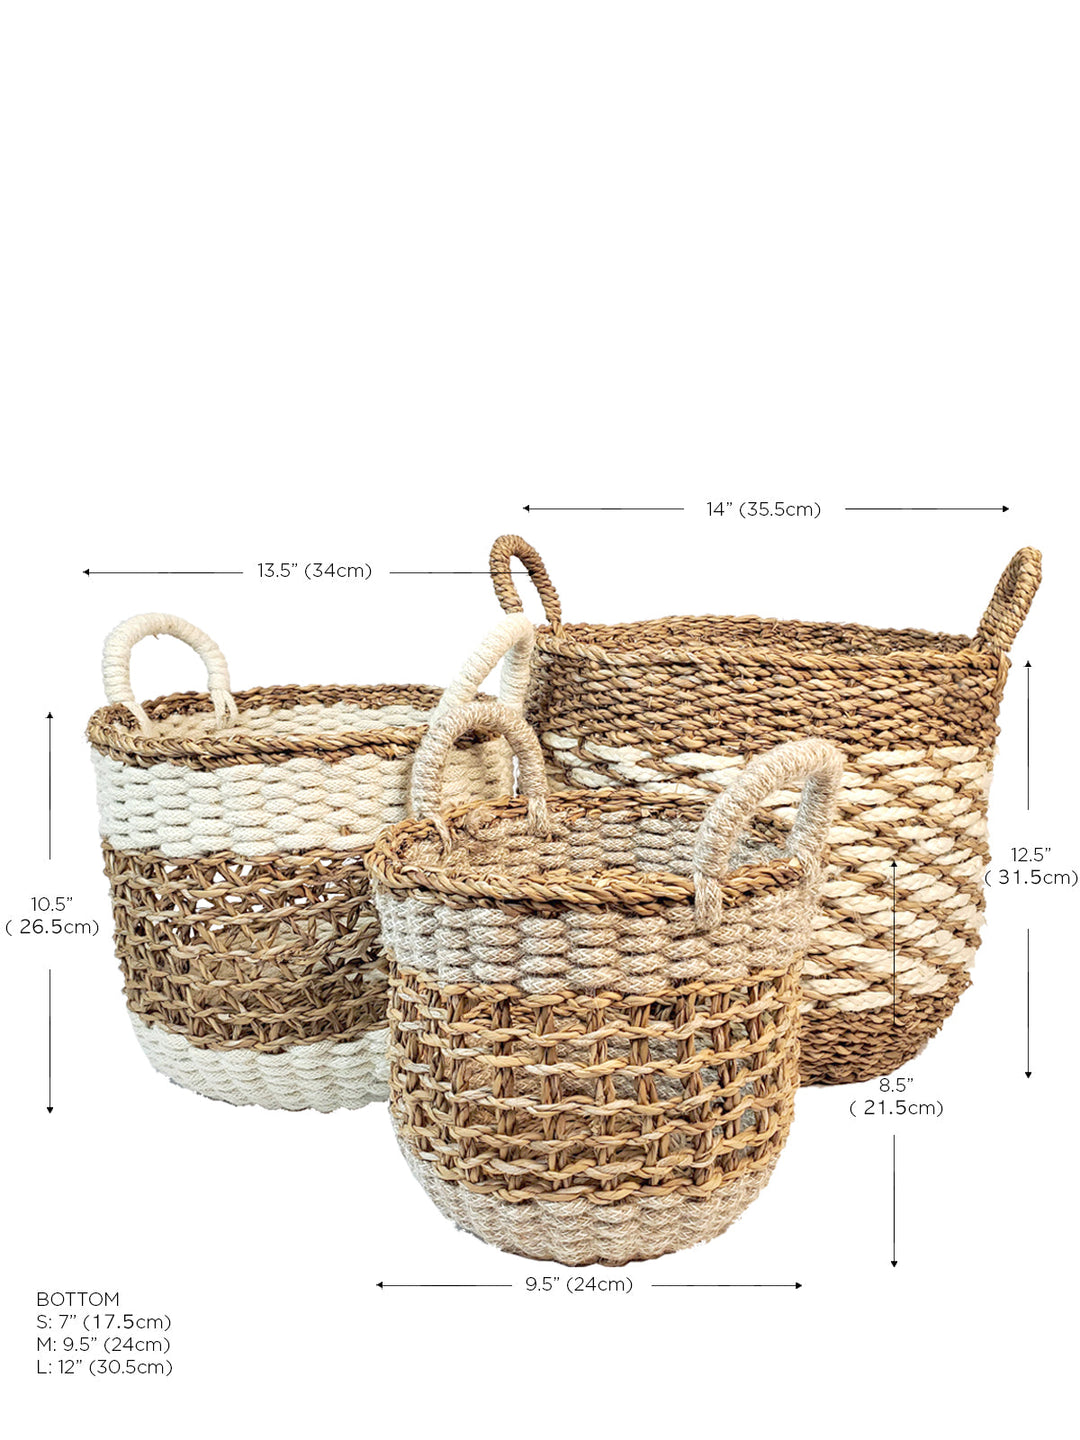 Ula Mesh Basket - Natural Hand Made